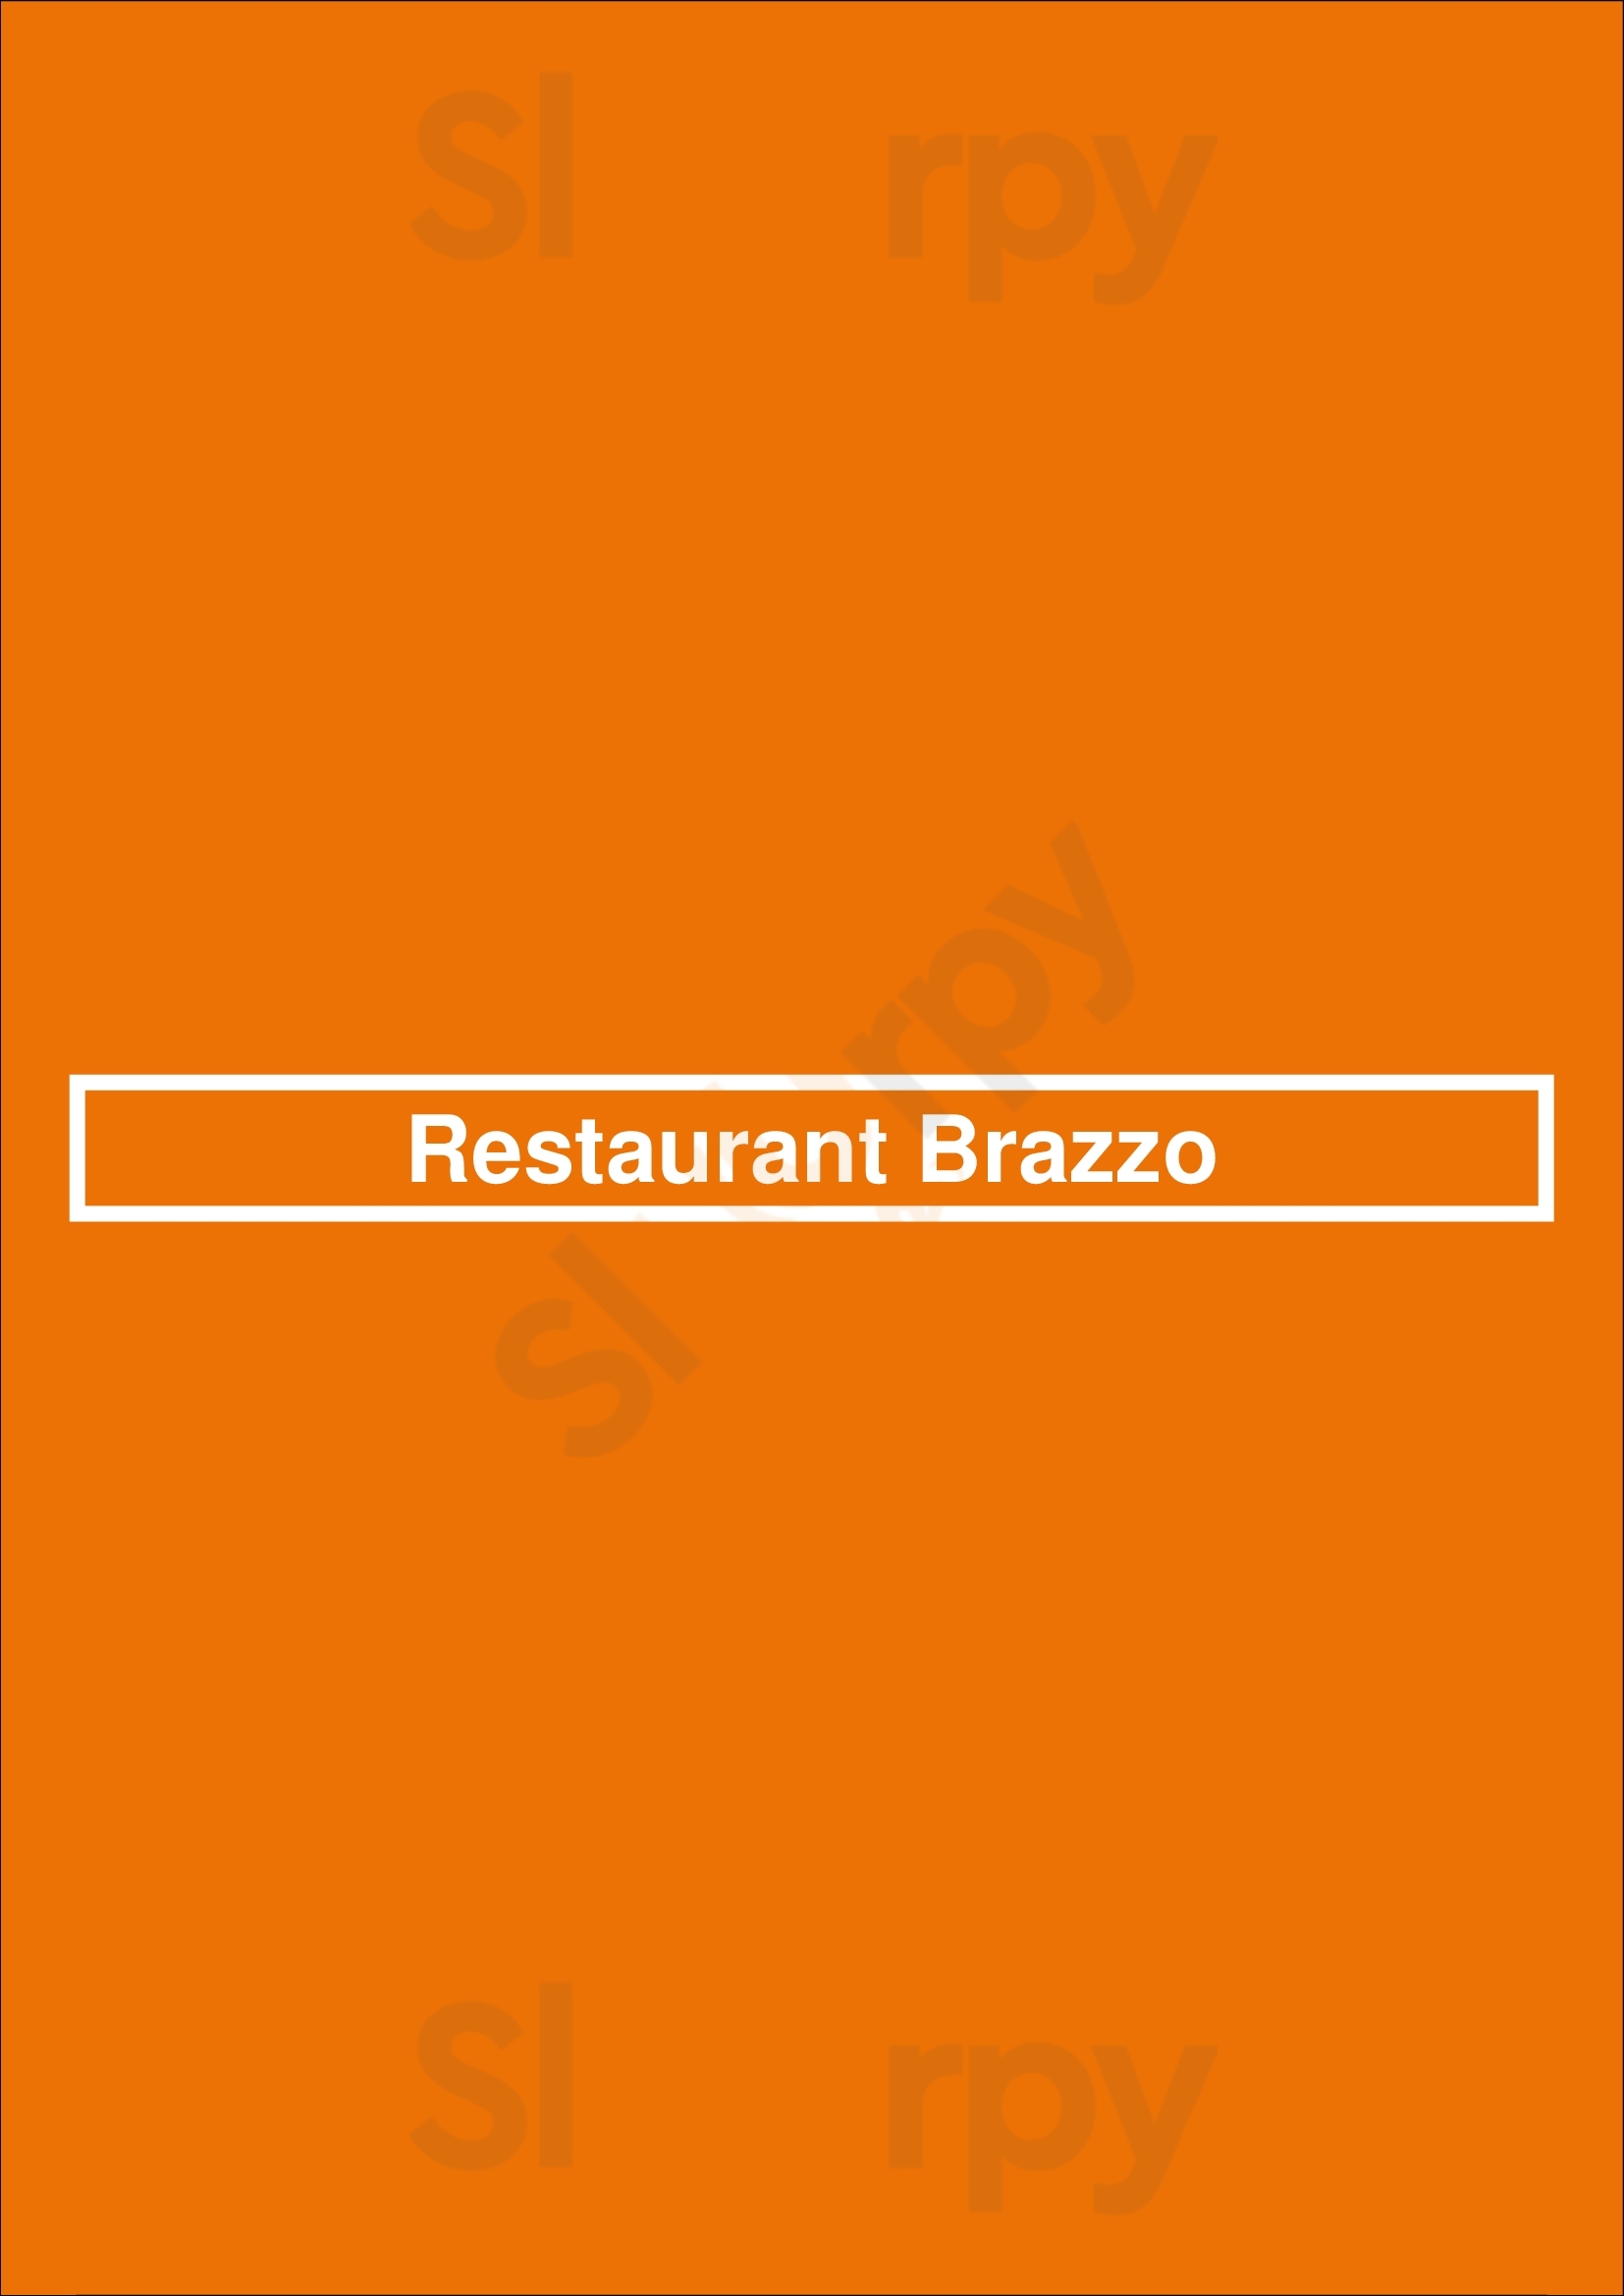 Restaurant Brazzo Rotterdam Menu - 1